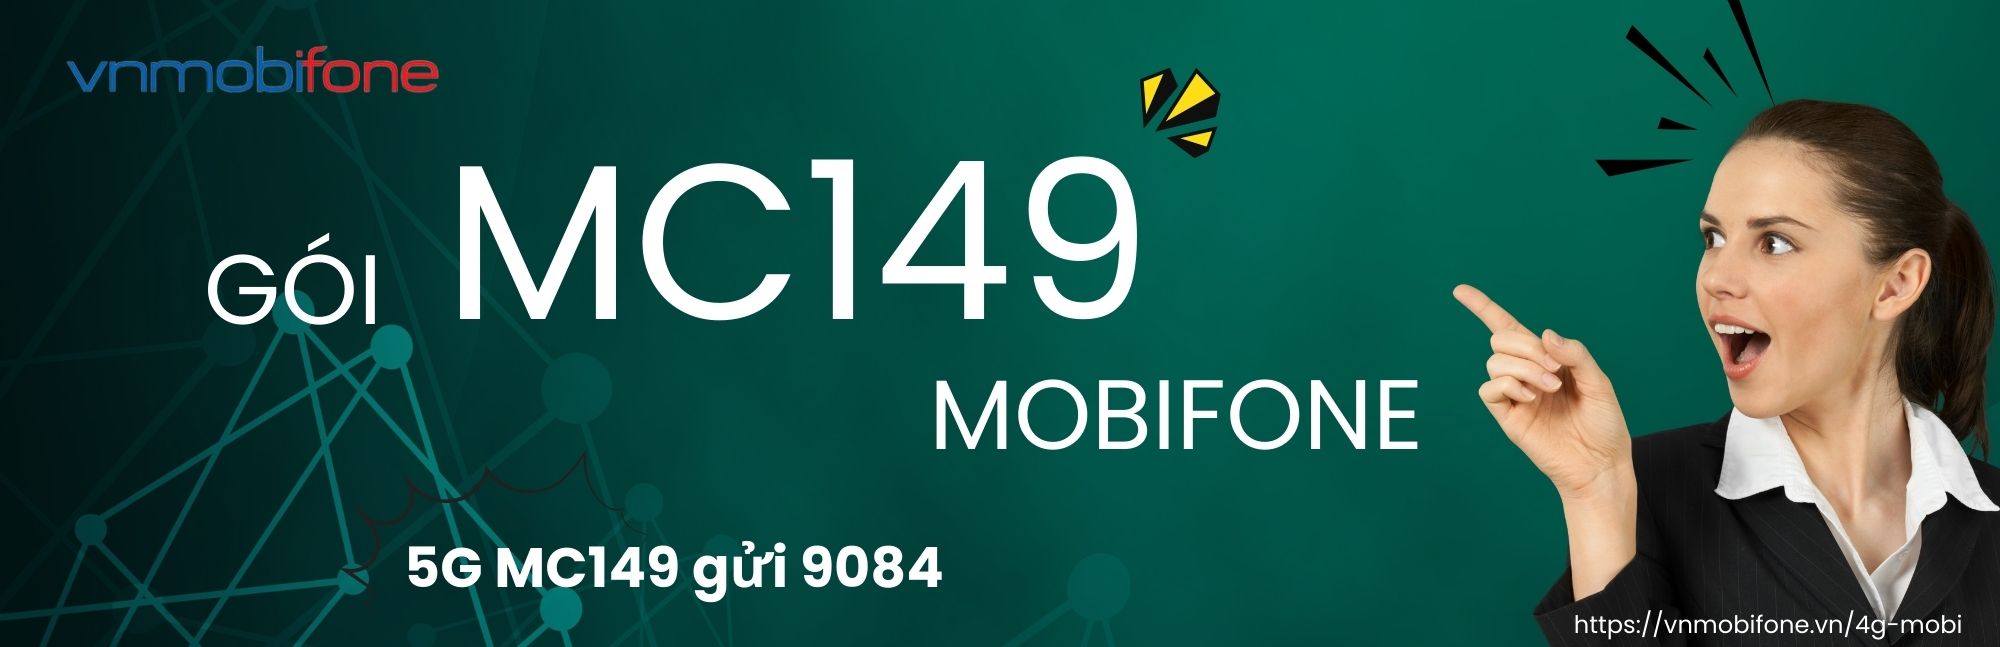 đăng ký gói mc149 mobifone